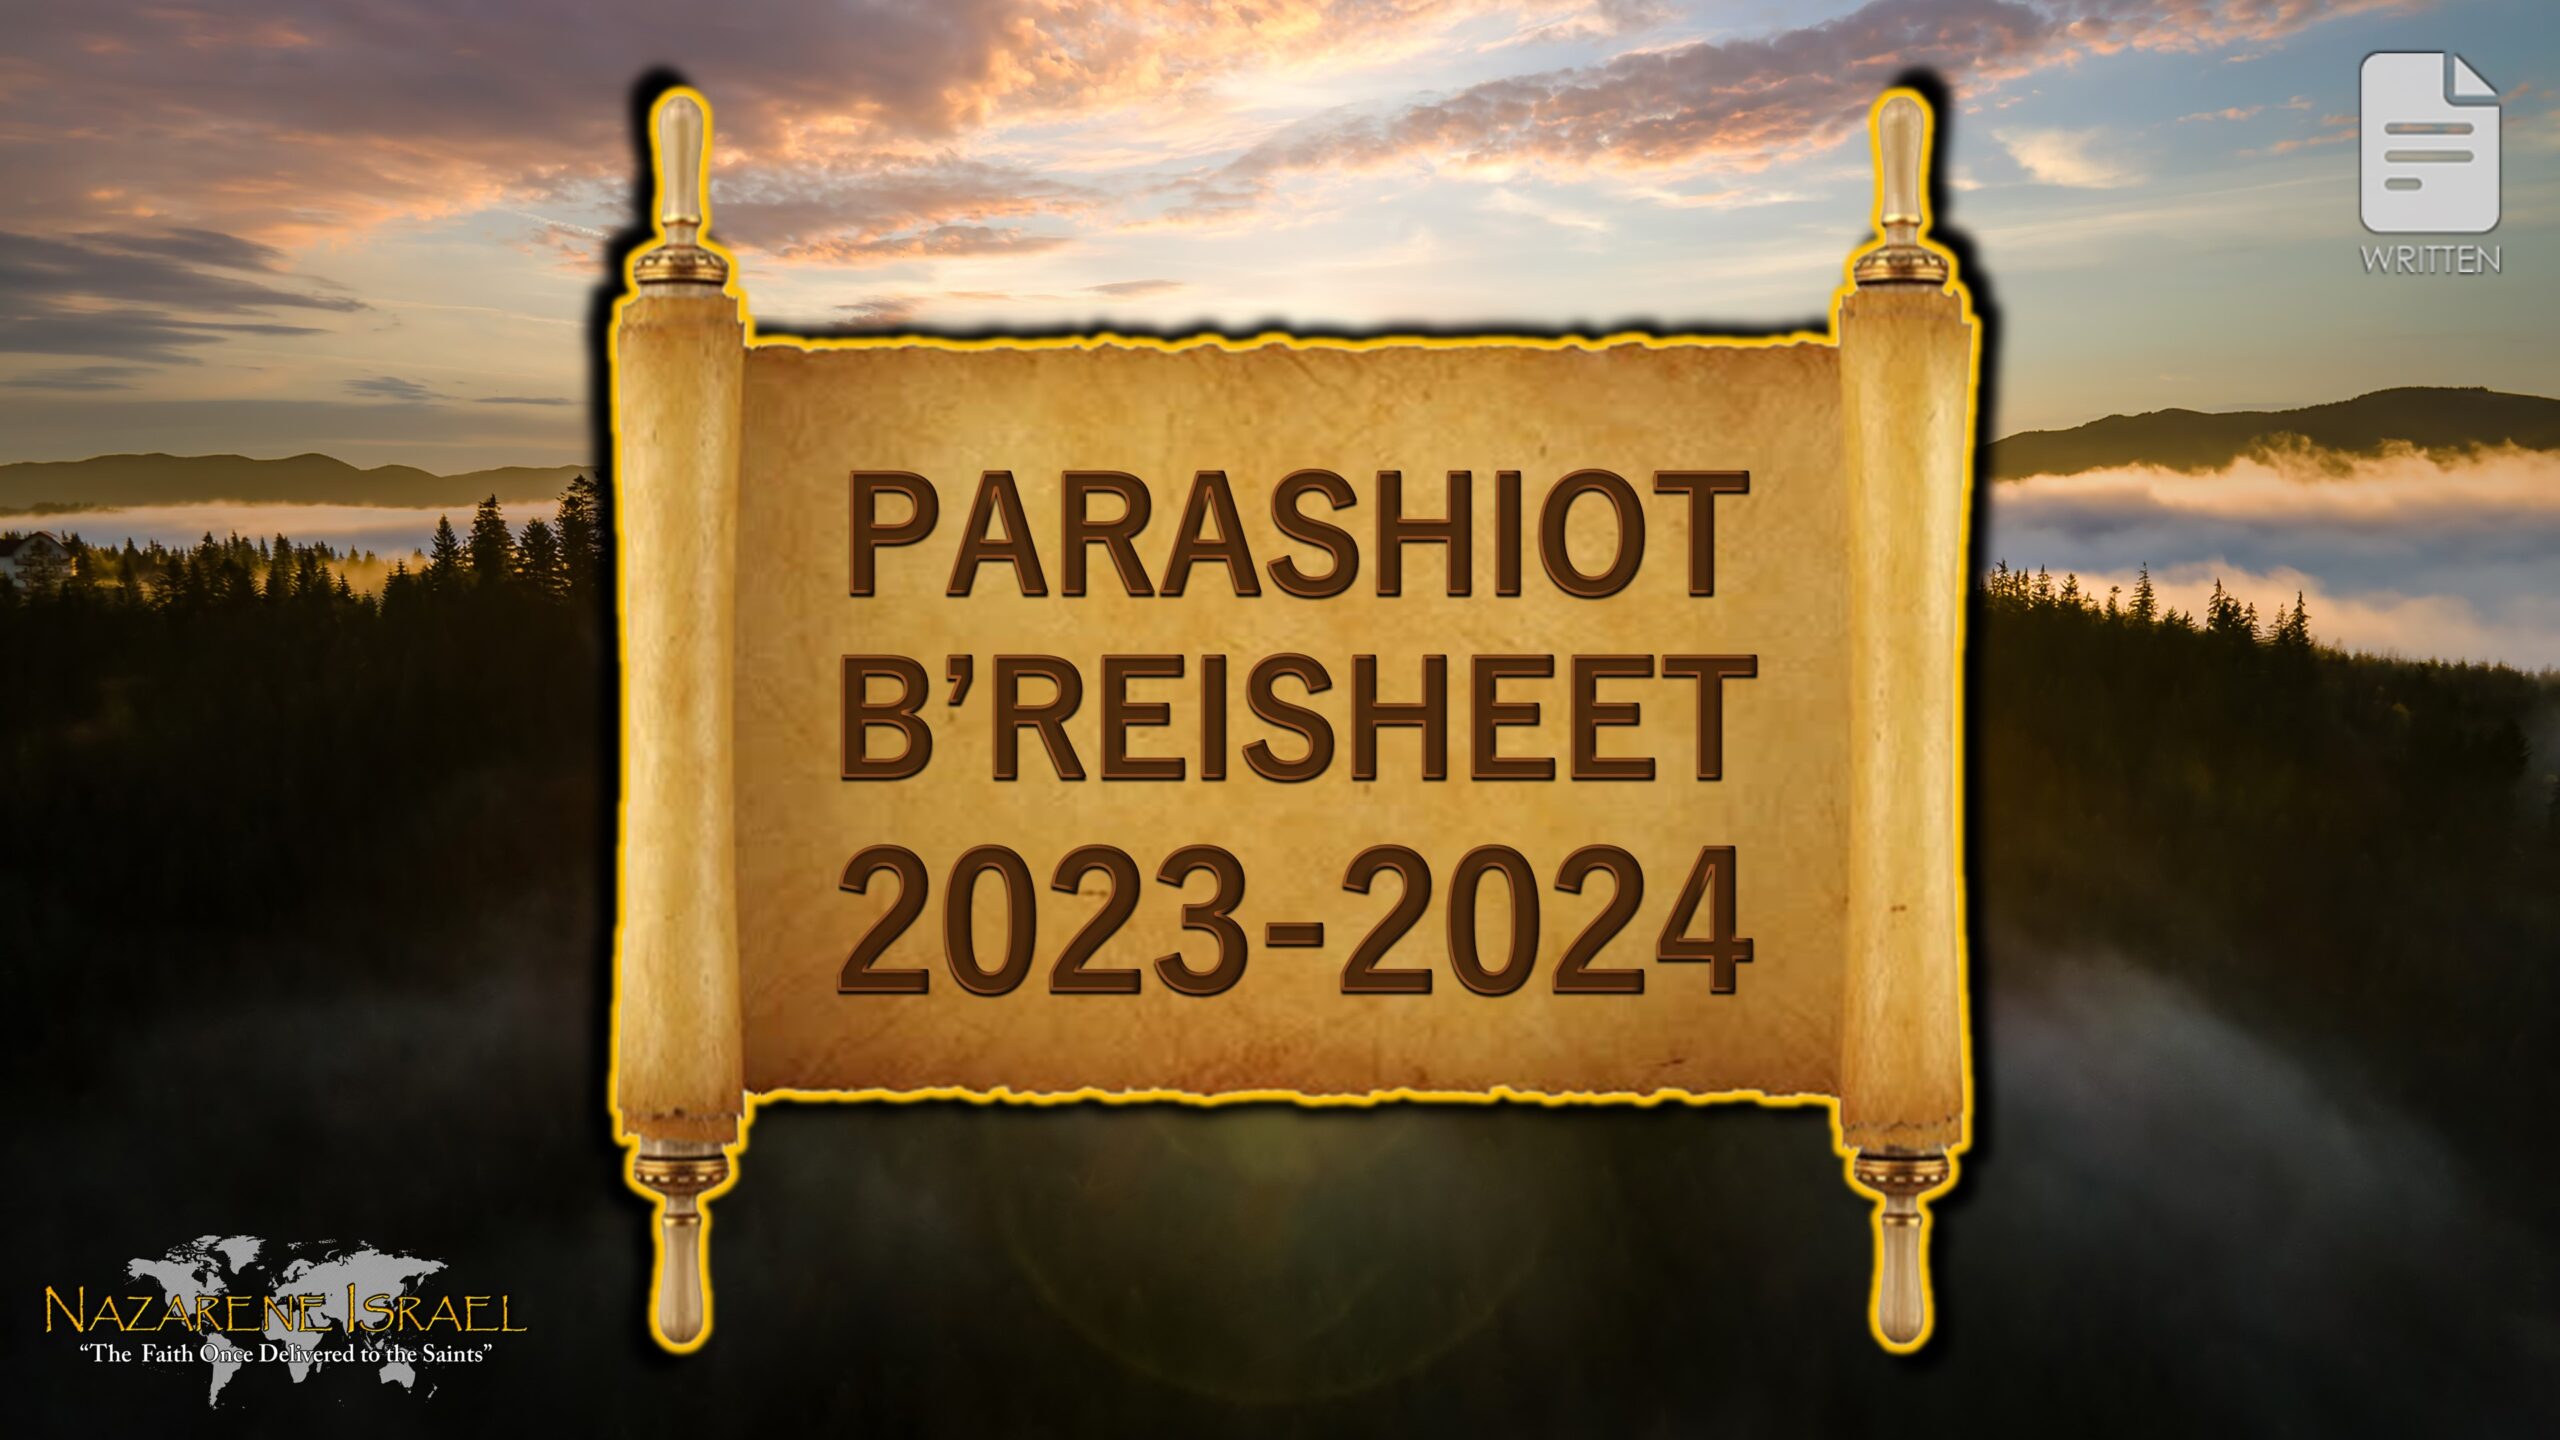 Parashiot B'reisheet 2023-24